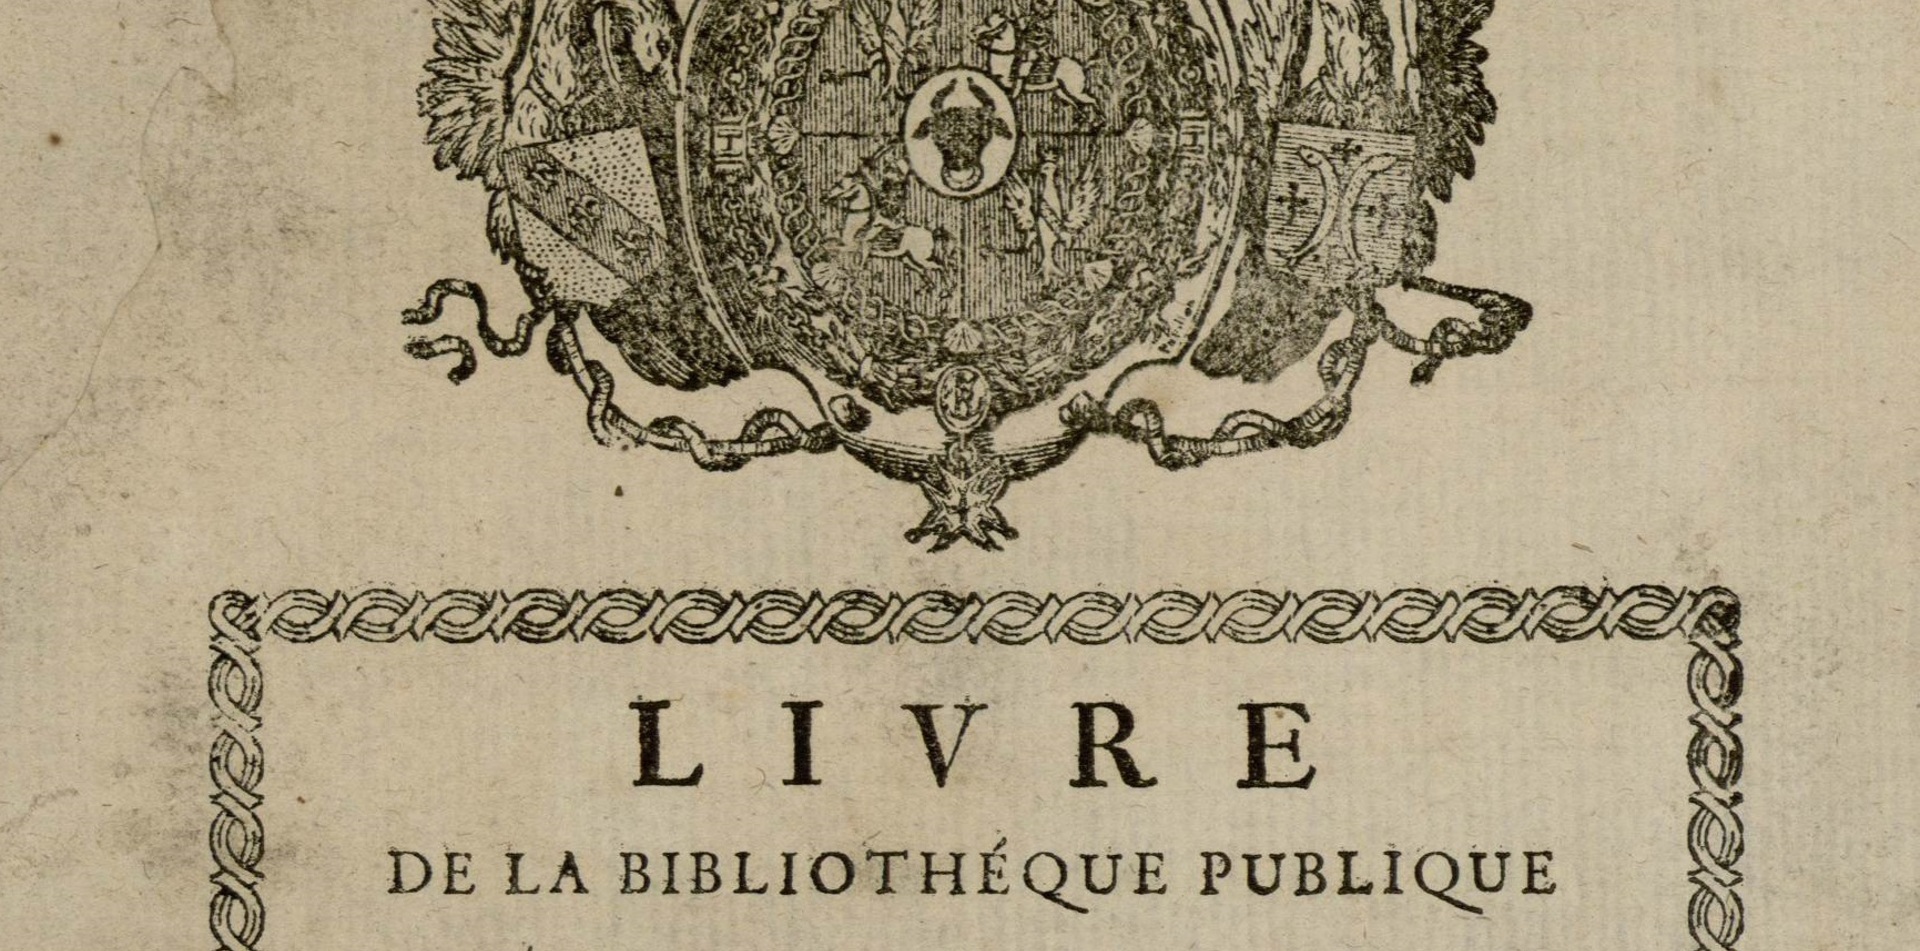 Contenu du La Bibliothèque publique de Nancy fondée par le roi de Pologne (1750-1789)